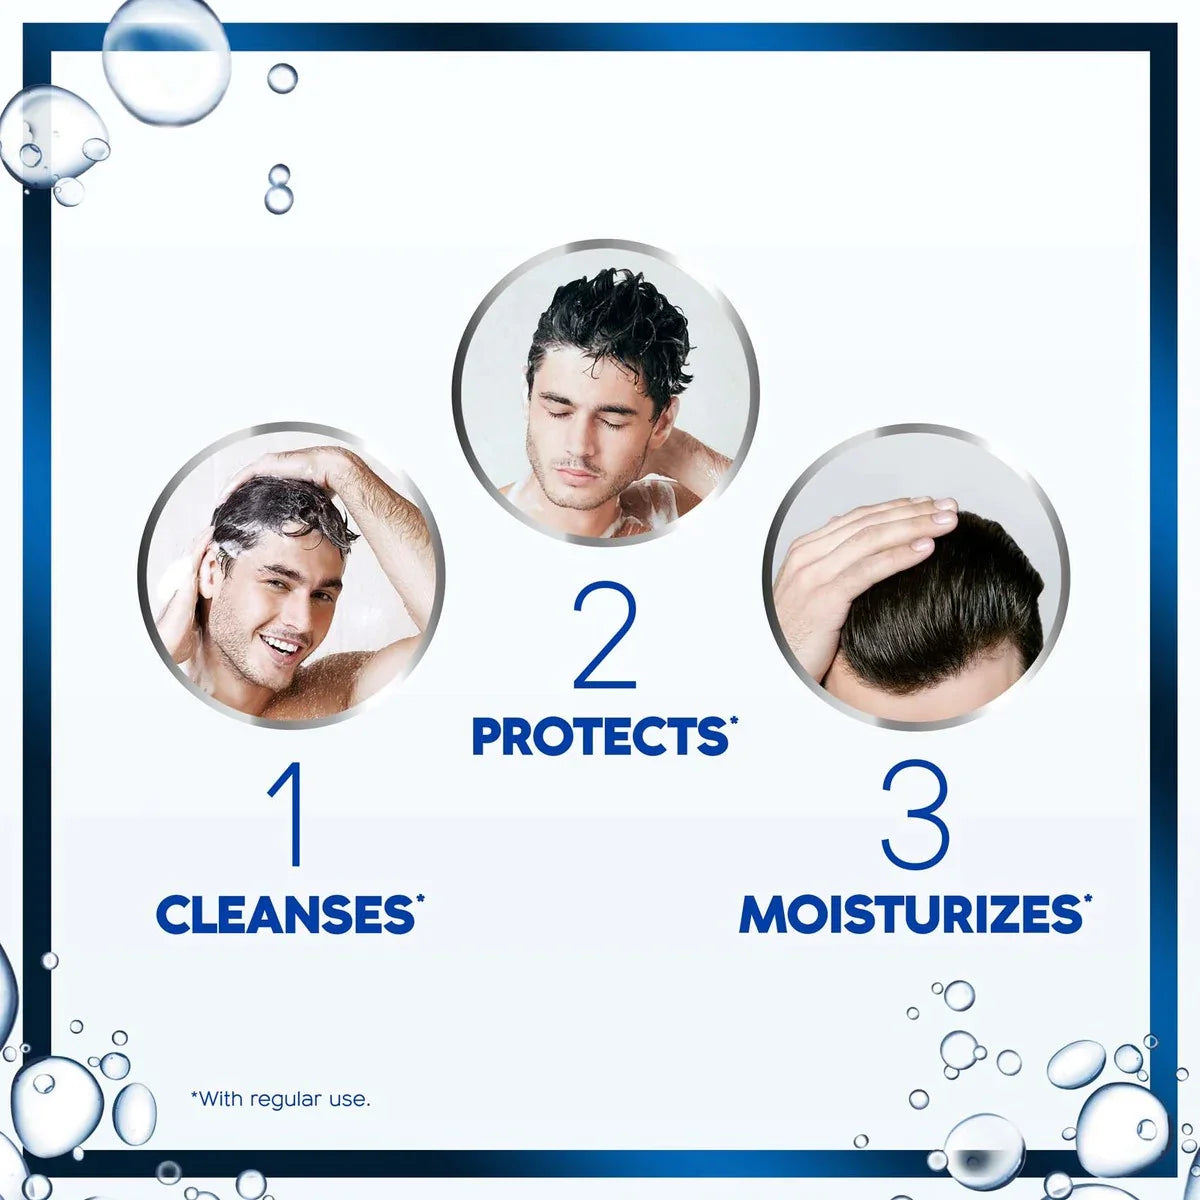 Head & Shoulders Classic Clean 2in1 Anti-Dandruff Shampoo 400ml - Wellness Shoppee